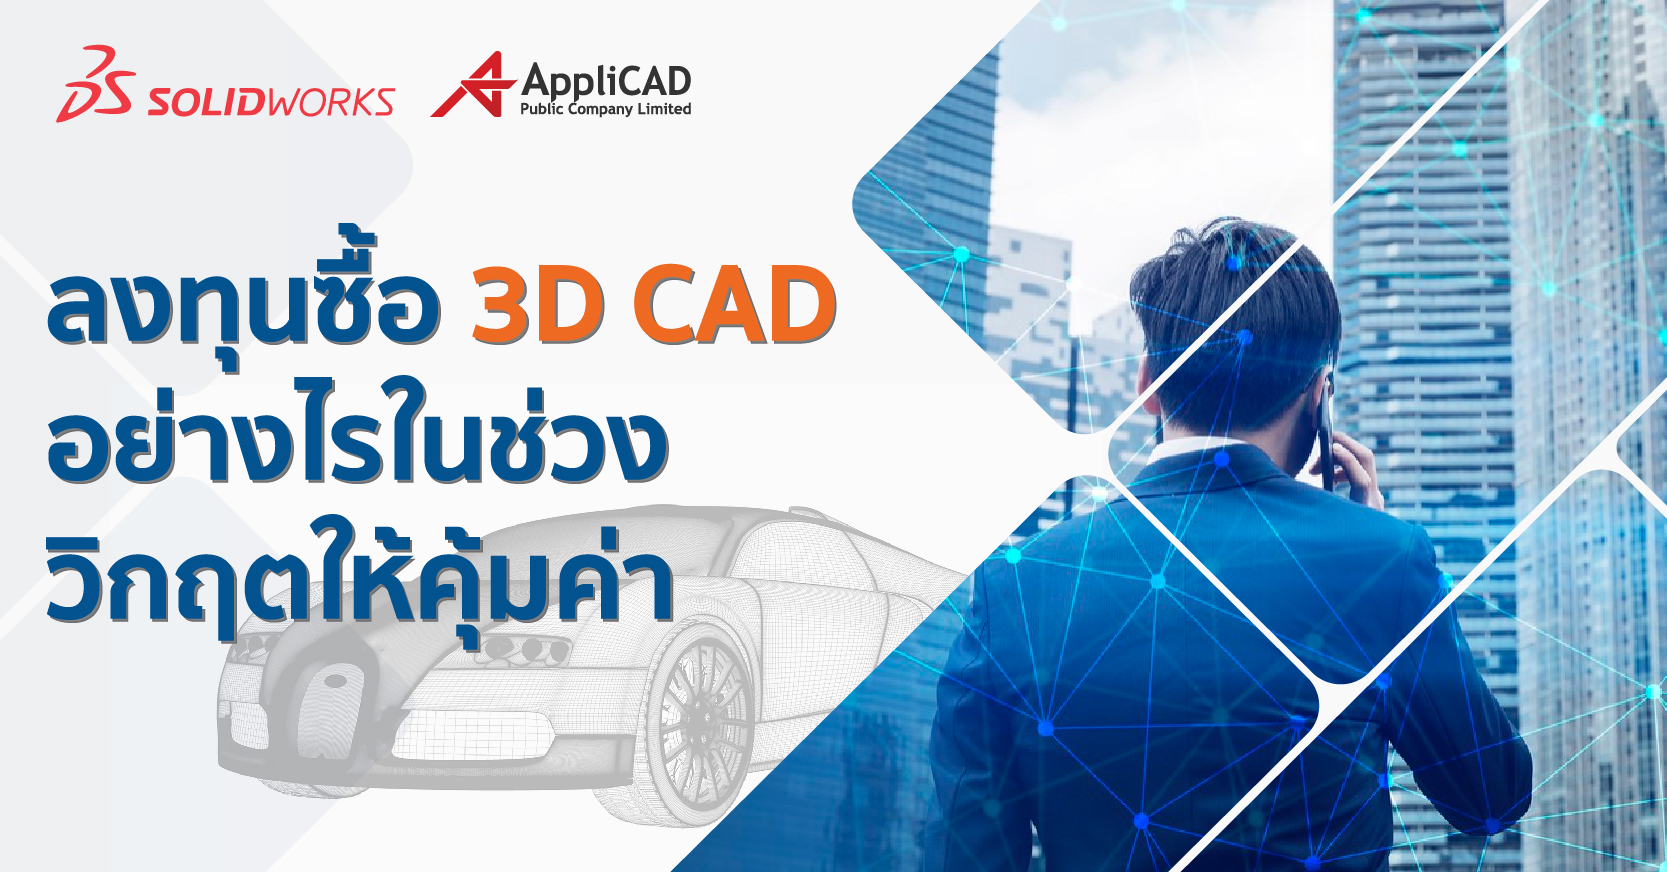 ซื้อ 3D CAD อย่างไร ในราคา ที่คุ้มค่า เลือกแบบเช่าใช้ หรือซื้อขาดดี ??